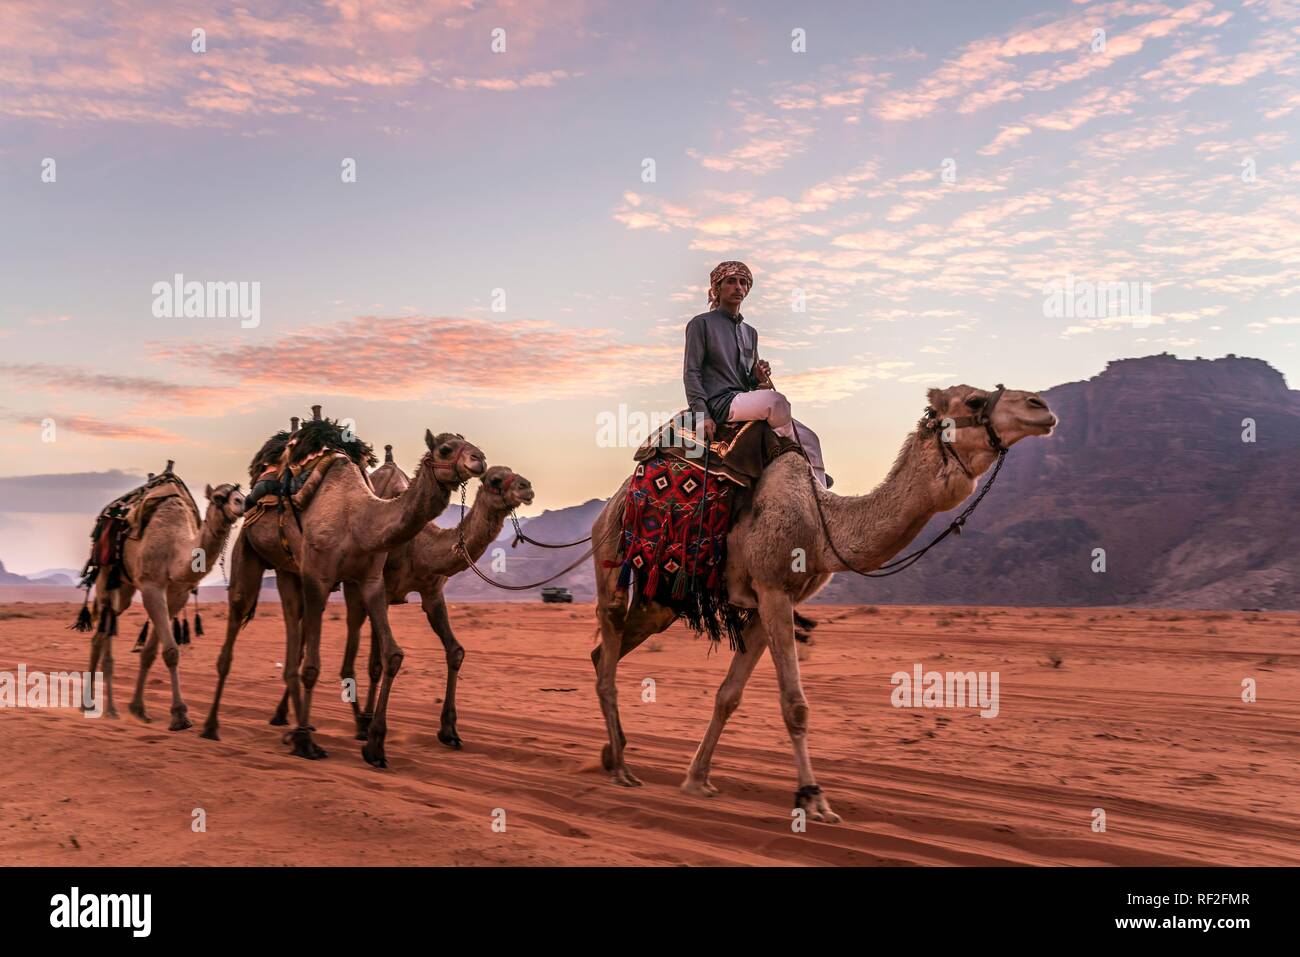 Bedouin with camels in the desert Wadi Rum, Jordan Stock Photo